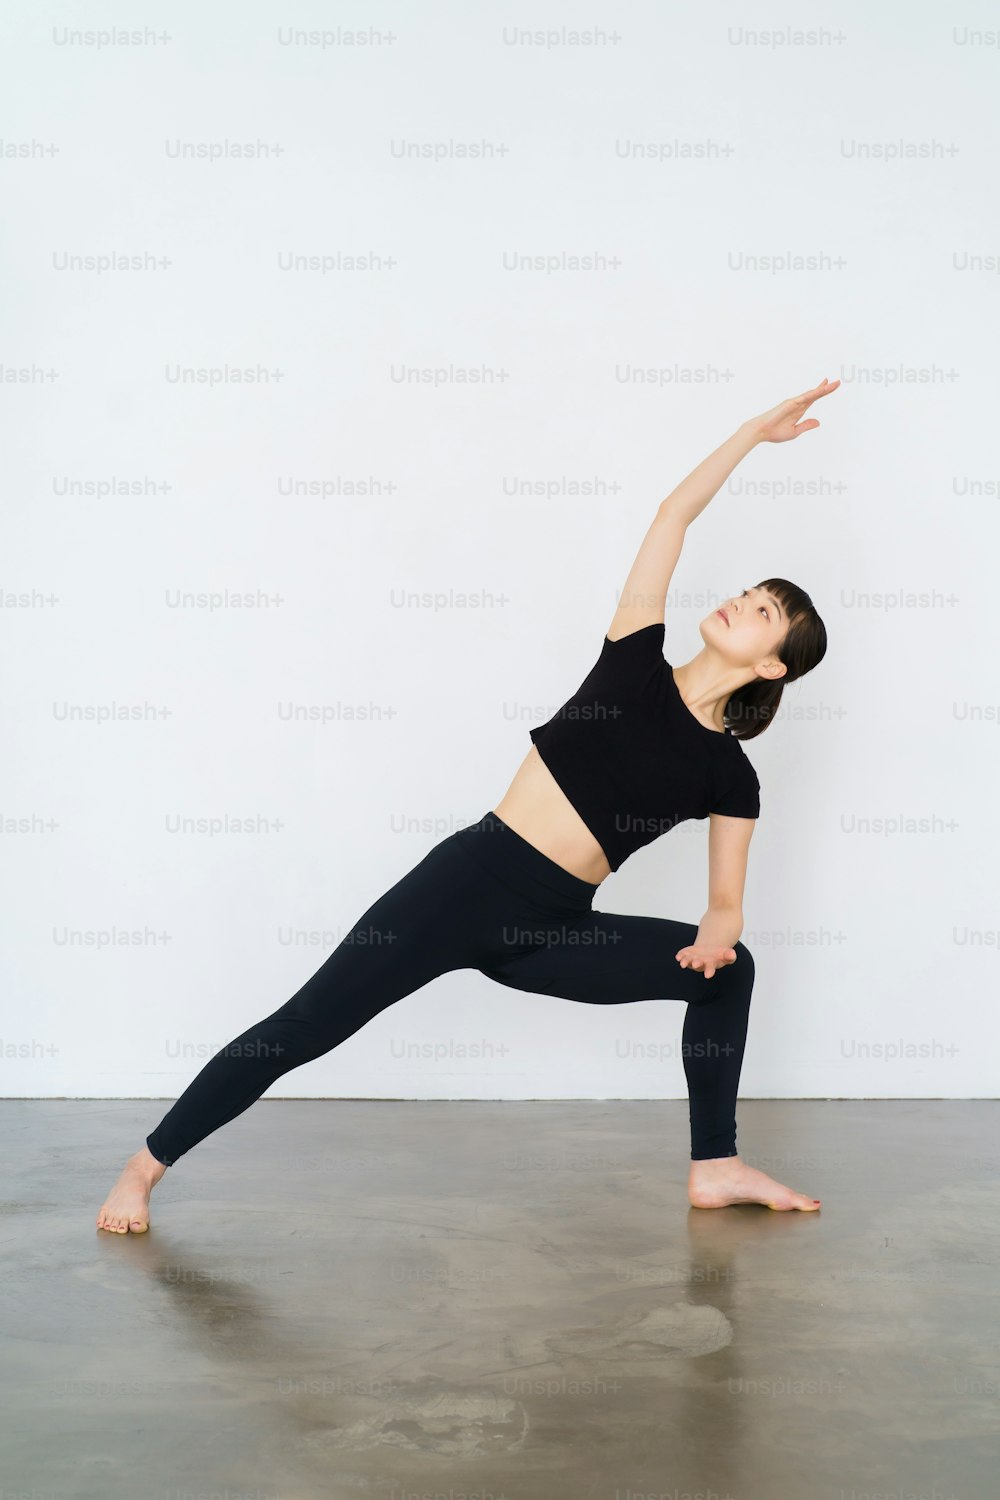 Junge Frau beim Yoga (dreieckige Pose)